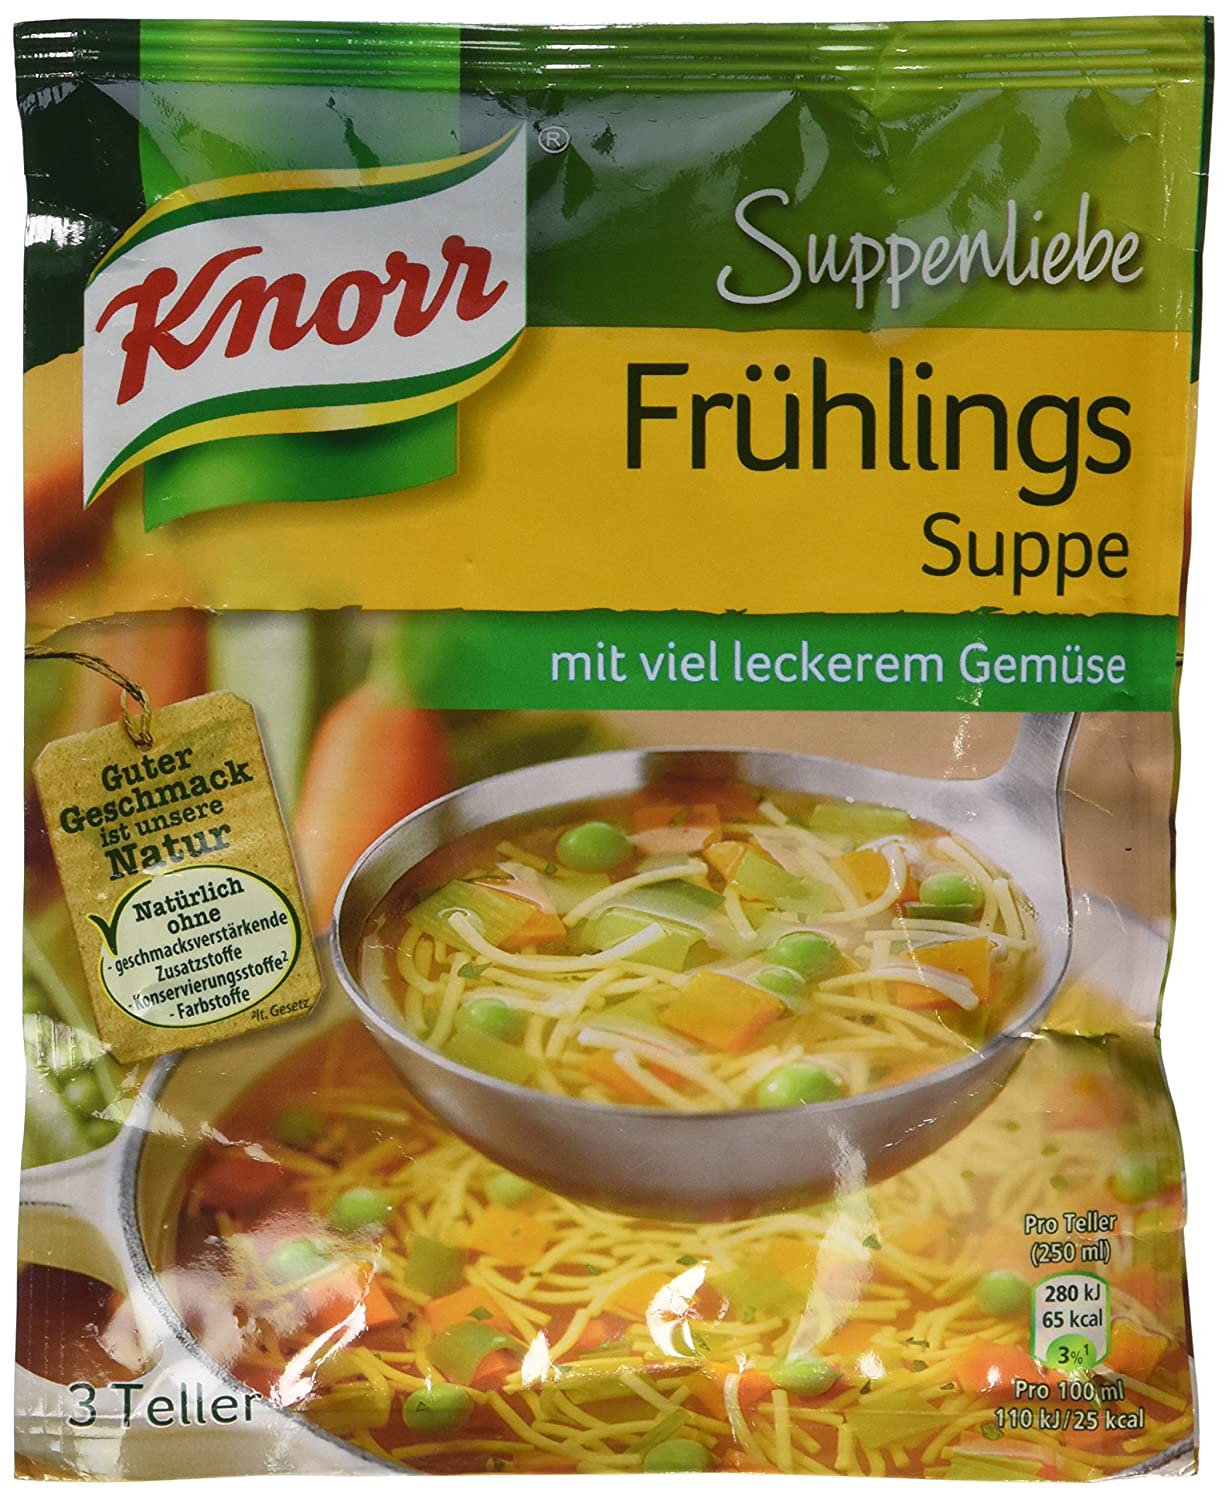 german soup Knorr spring soup Fruehlingssuppe